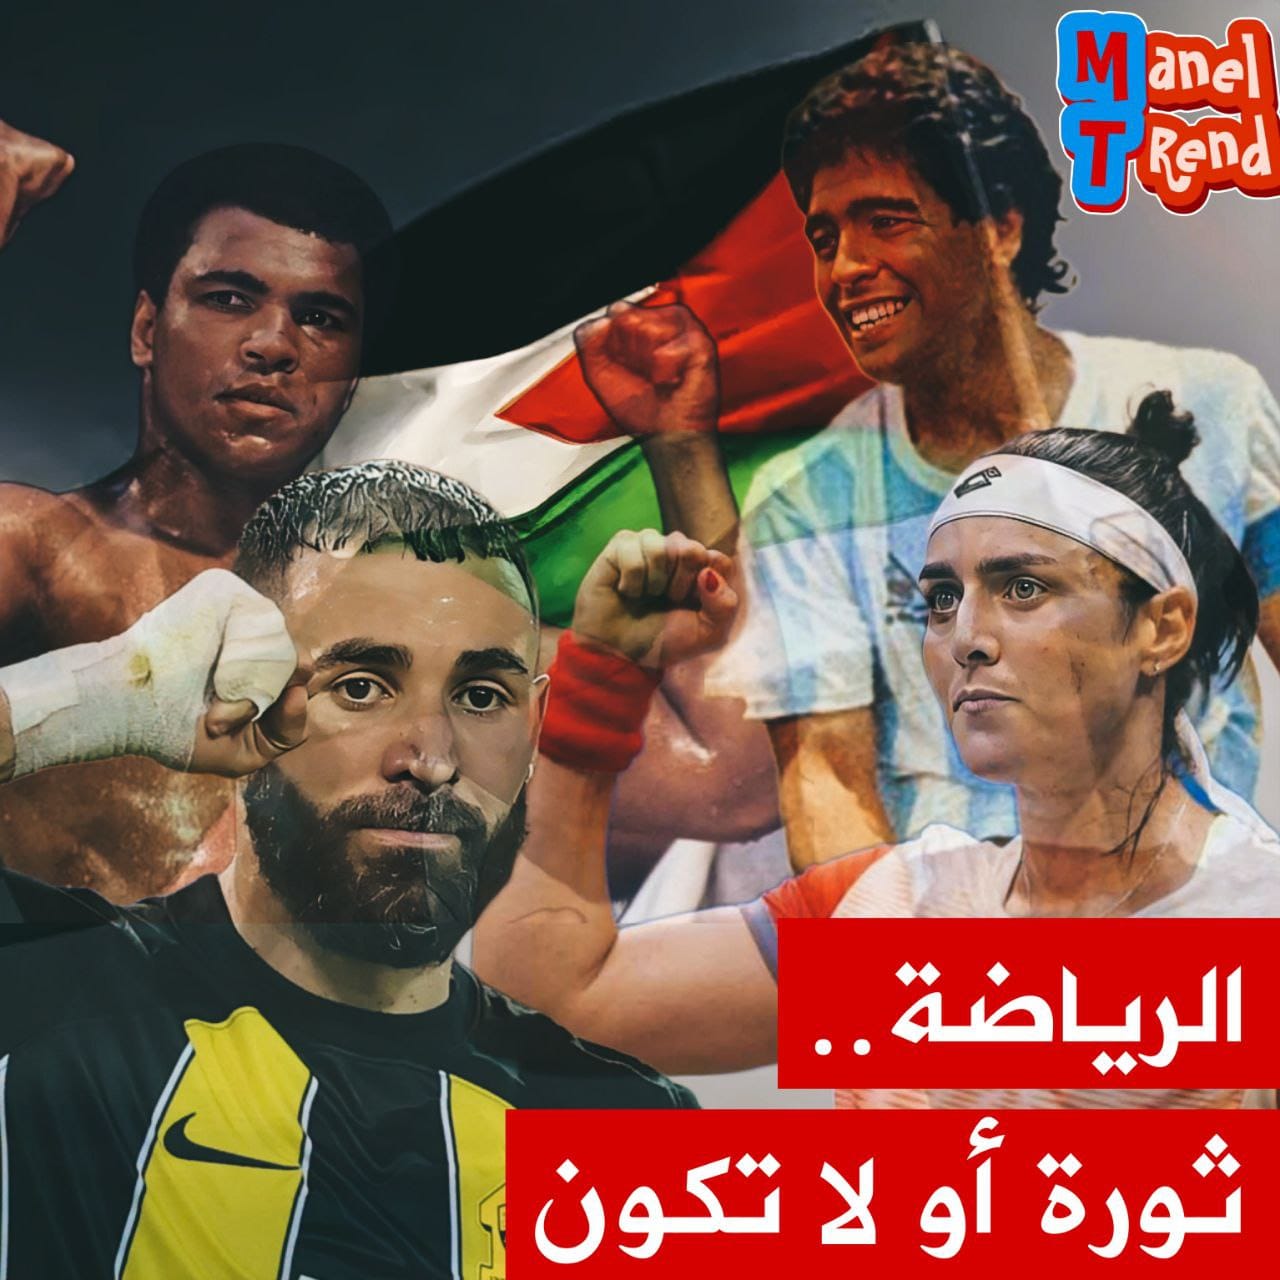 حلقة جديدة من برنامج "ترند مع " منال خصصت لموضوع مساندة الرياضيين للقضية الفلسطينية وقضايا الحرية